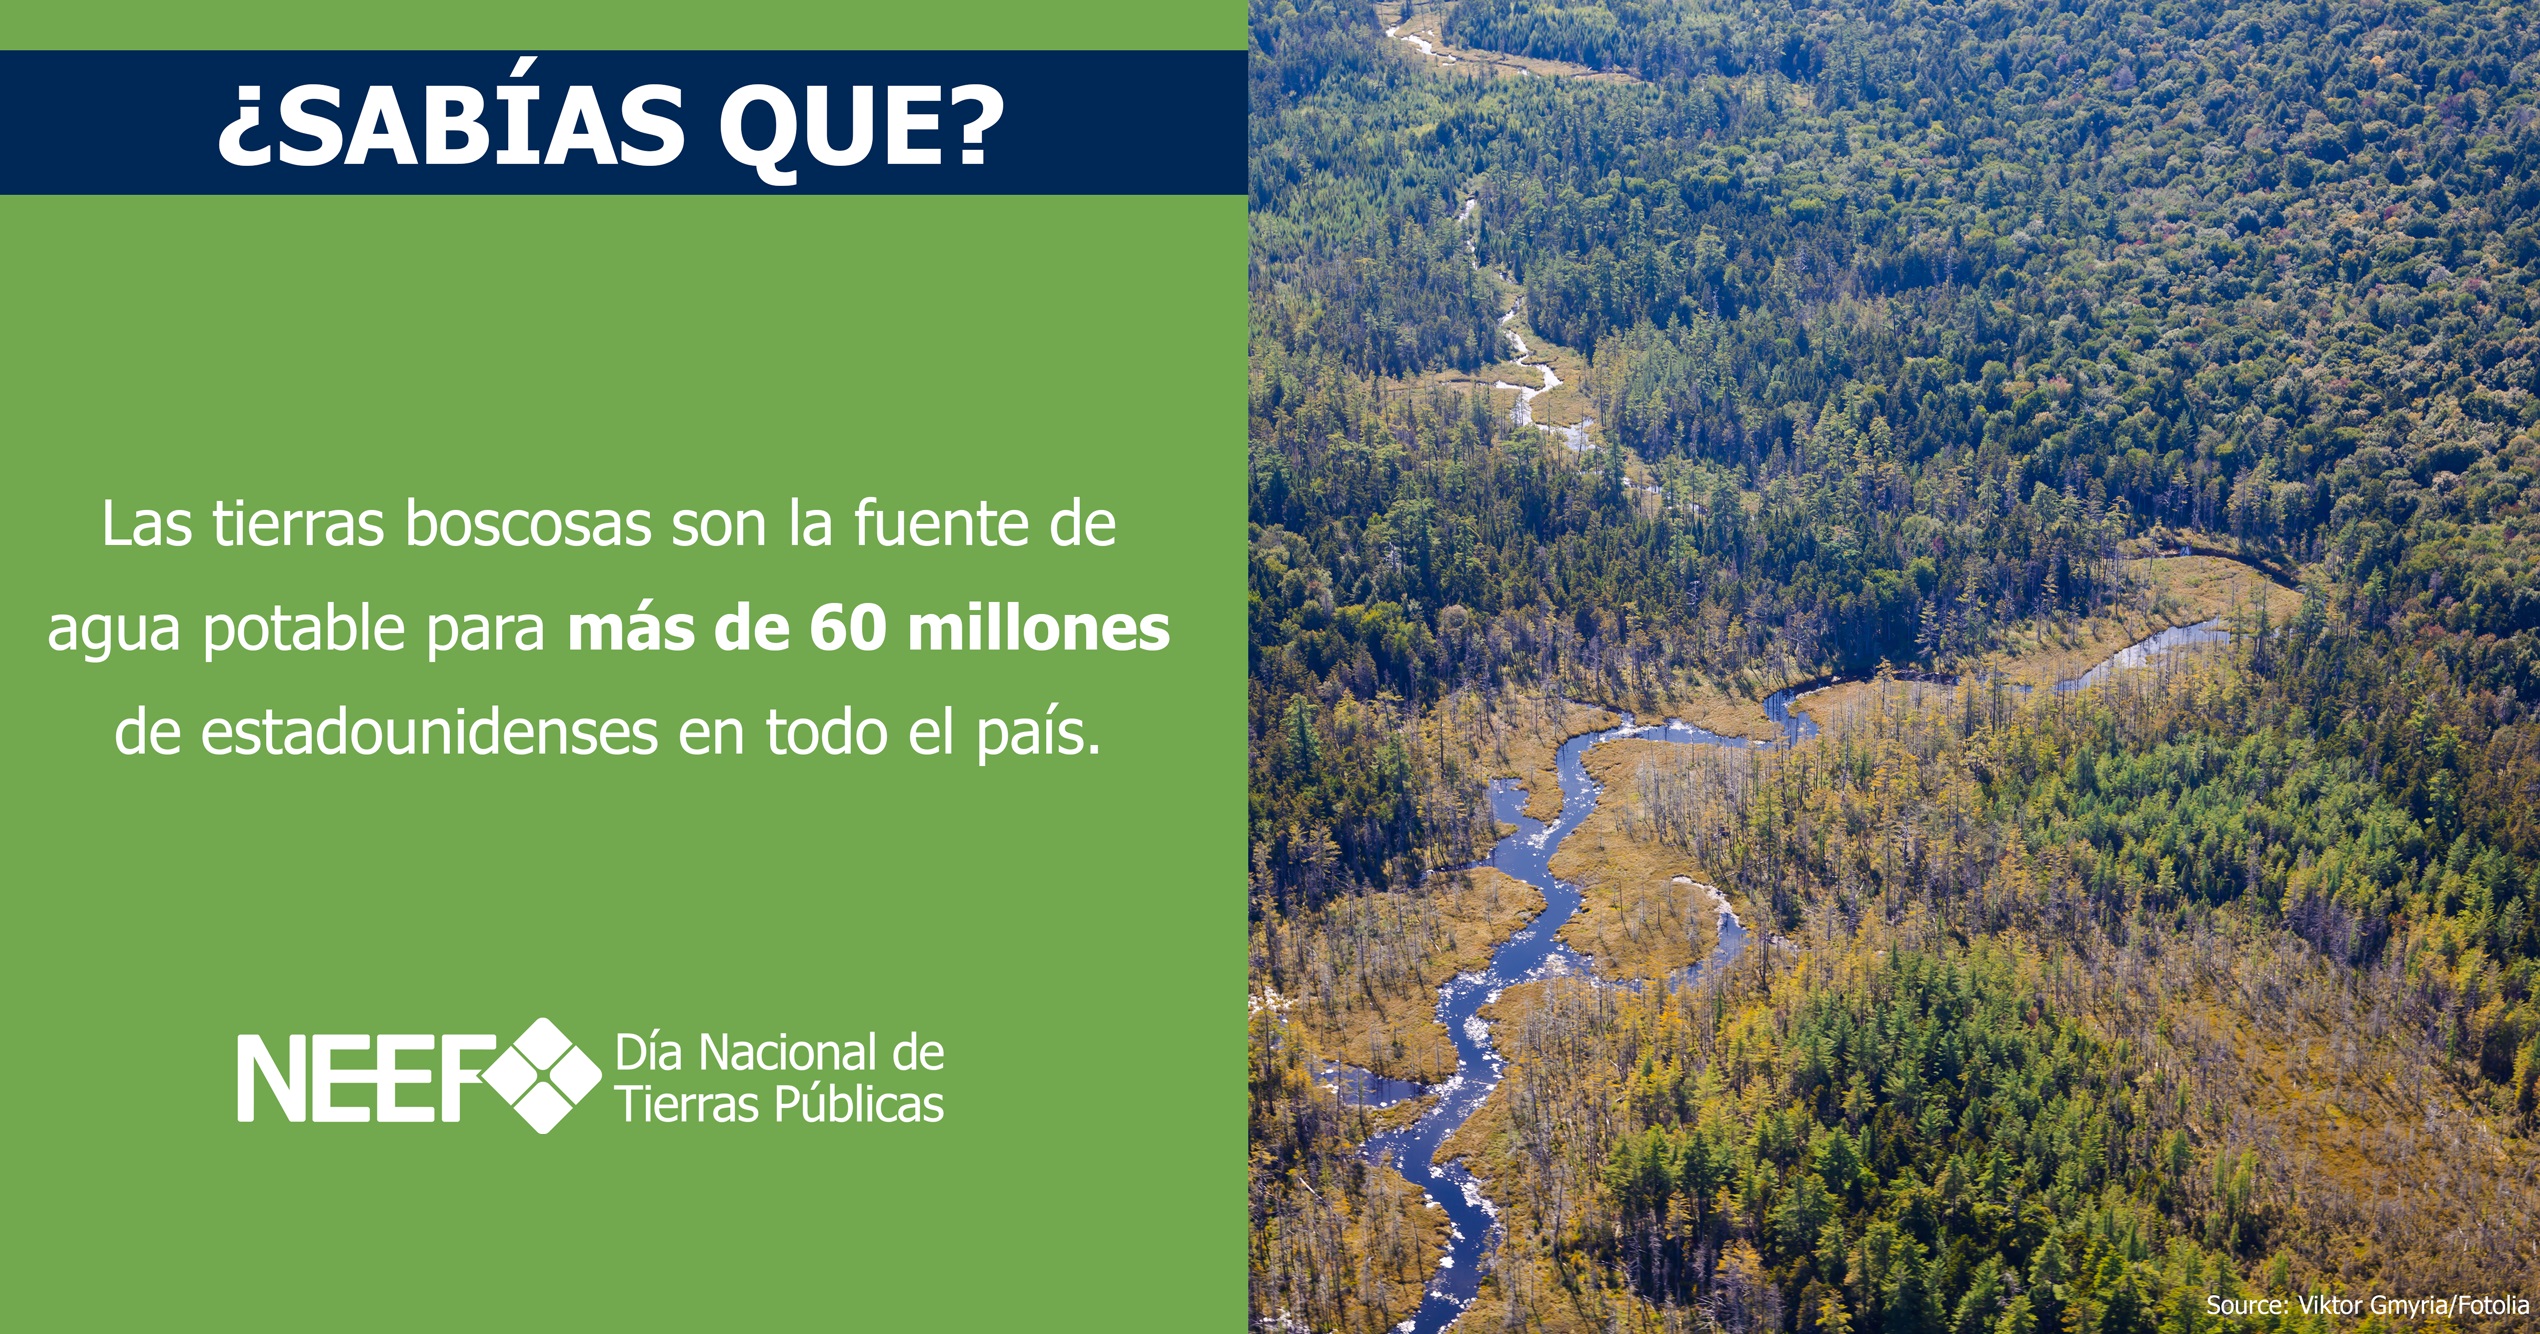 Las tierras boscosas son la fuente de agua potable para más de 60 millones de estadounidenses en todo el país.